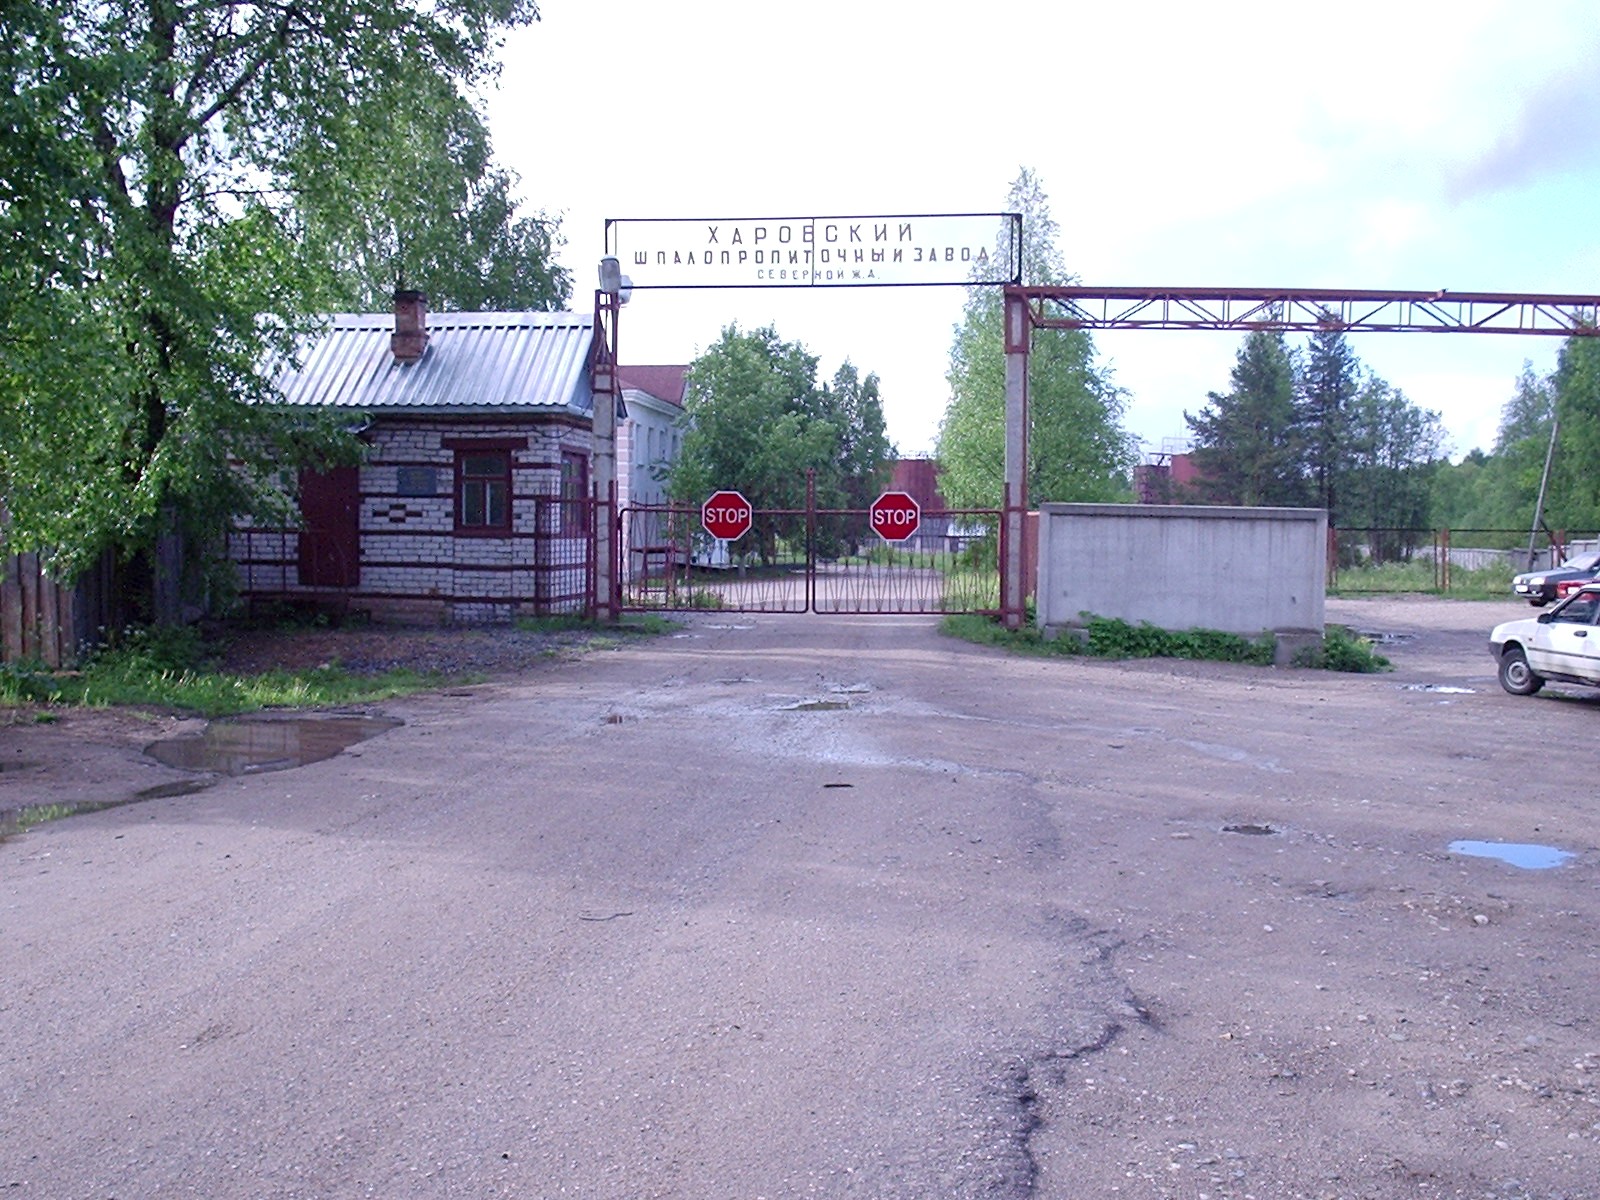 Узкоколейная железная дорога Харовского шпалопропиточного завода — фотографии, сделанные в 2005 году (часть 2)